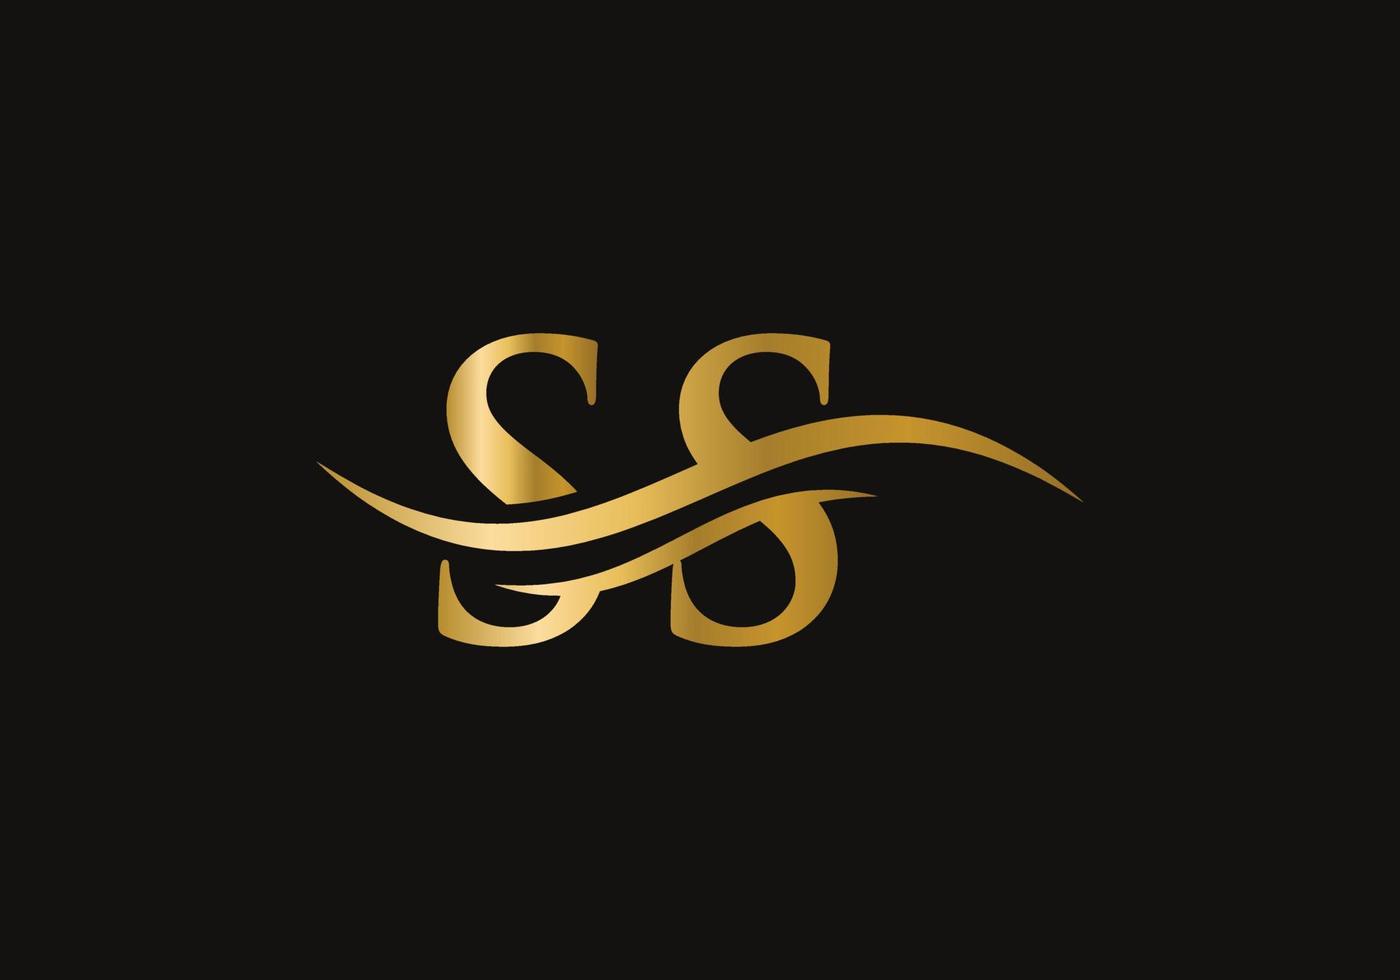 wasserwelle ss logo vektor. Swoosh-Buchstabe ss-Logo-Design für Geschäfts- und Firmenidentität vektor